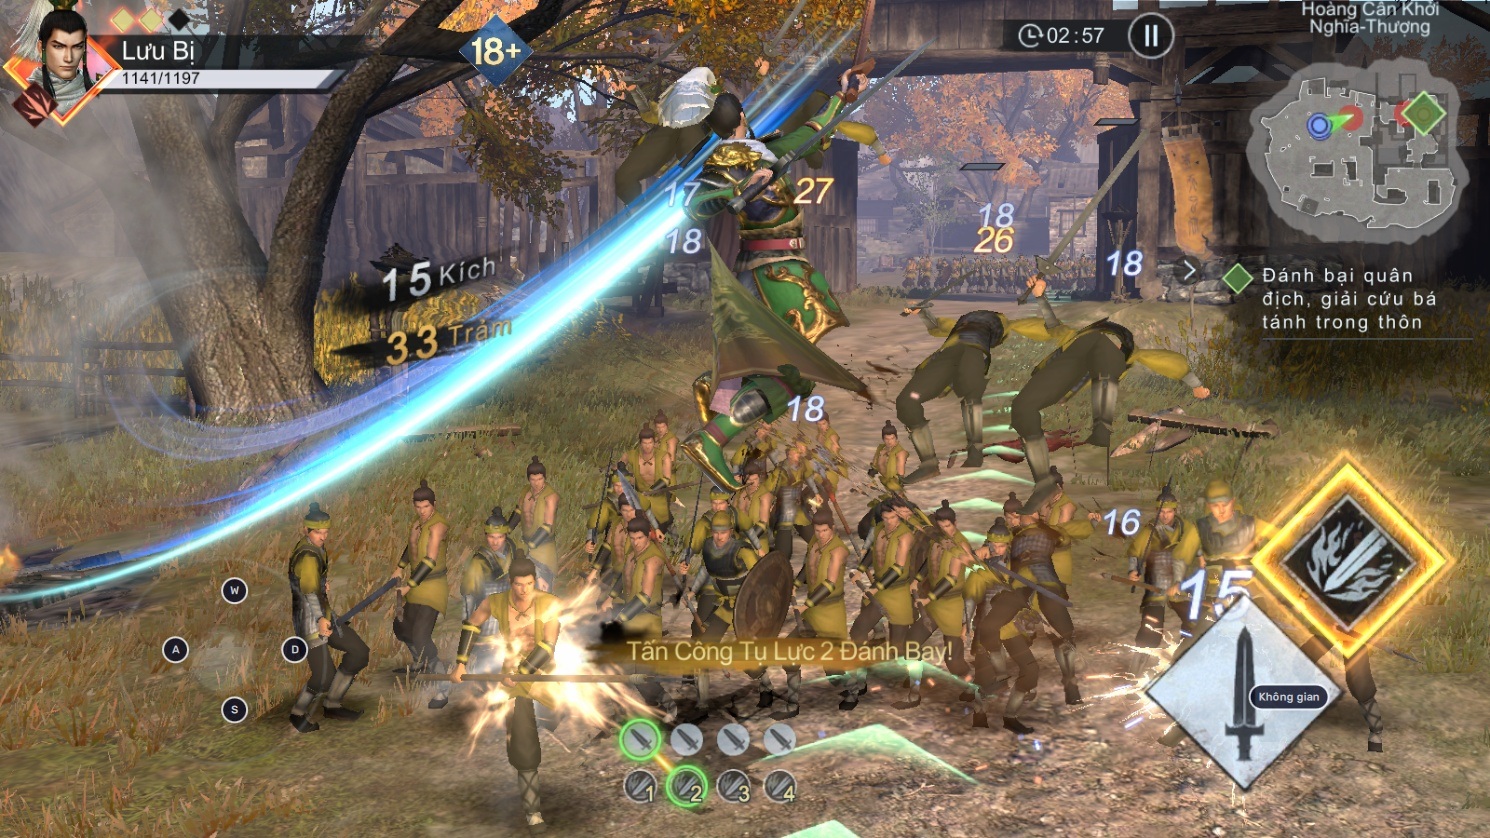 Trải nghiệm game nhập vai hành động Dynasty Warriors: Overlords trên PC với BlueStacks